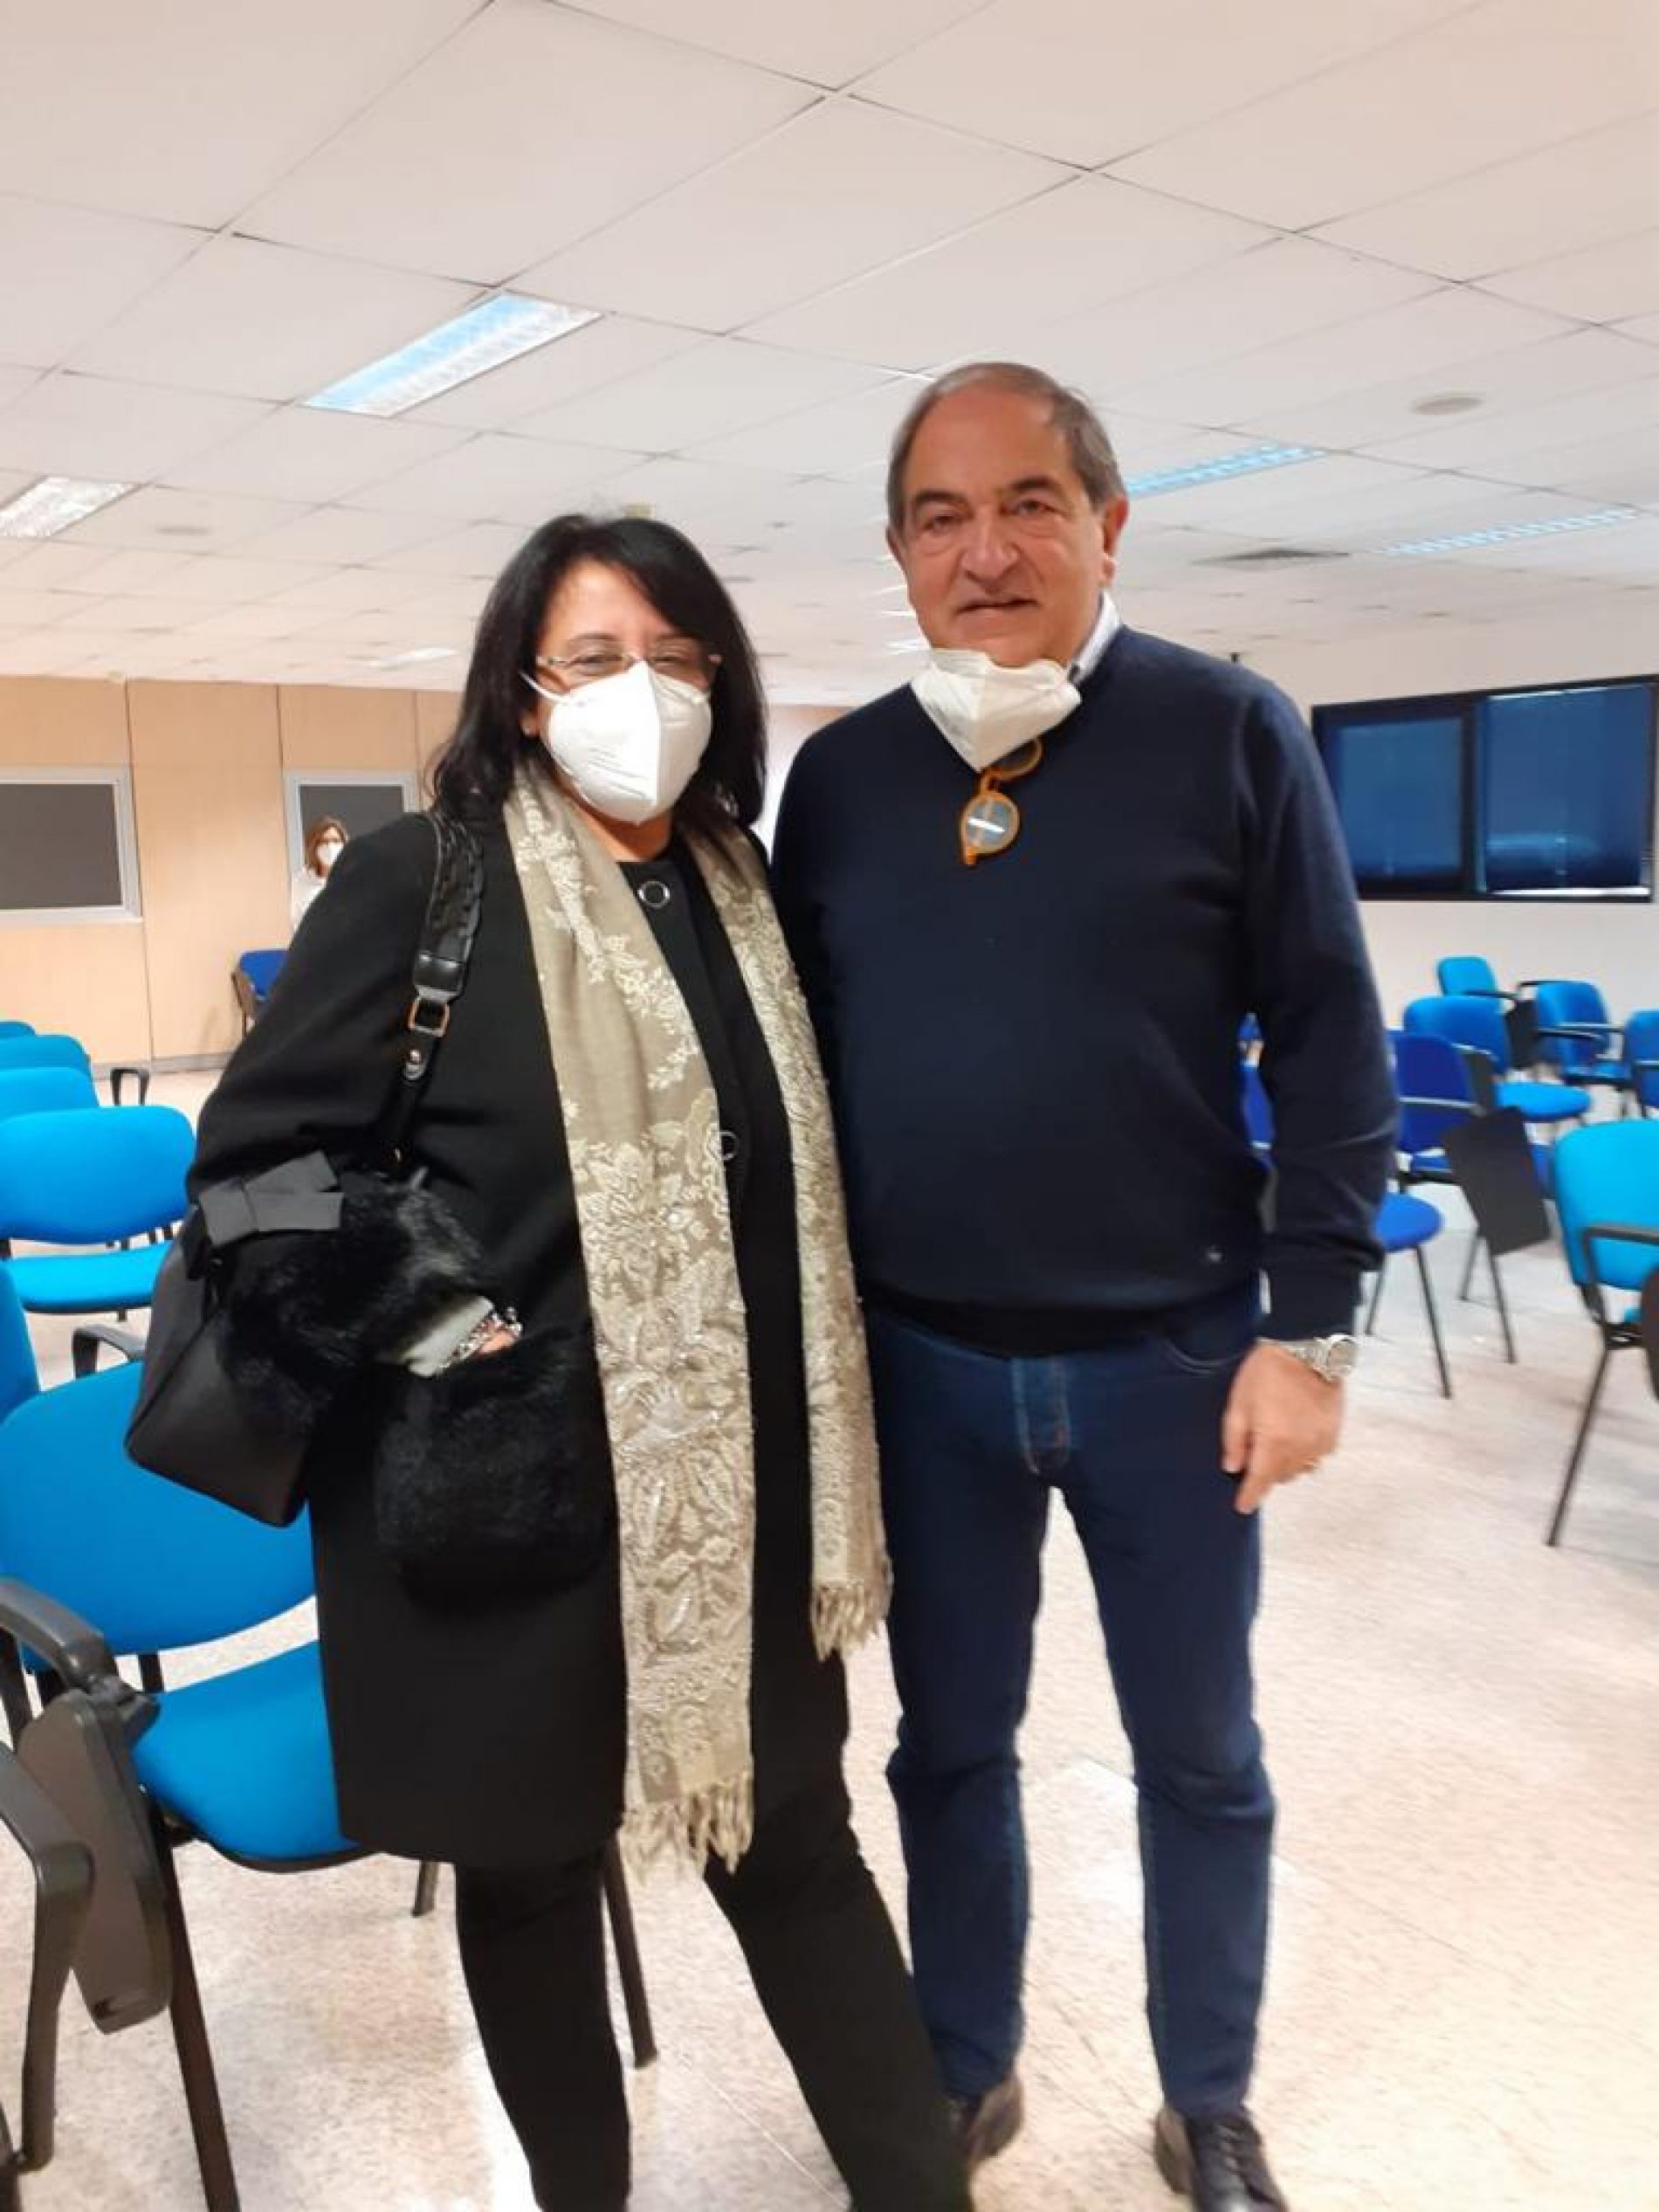 BARRAFRANCA. È di Barrafranca la nuova coordinatrice del reparto cardiologia dell’ospedale “Umberto I” di Enna.